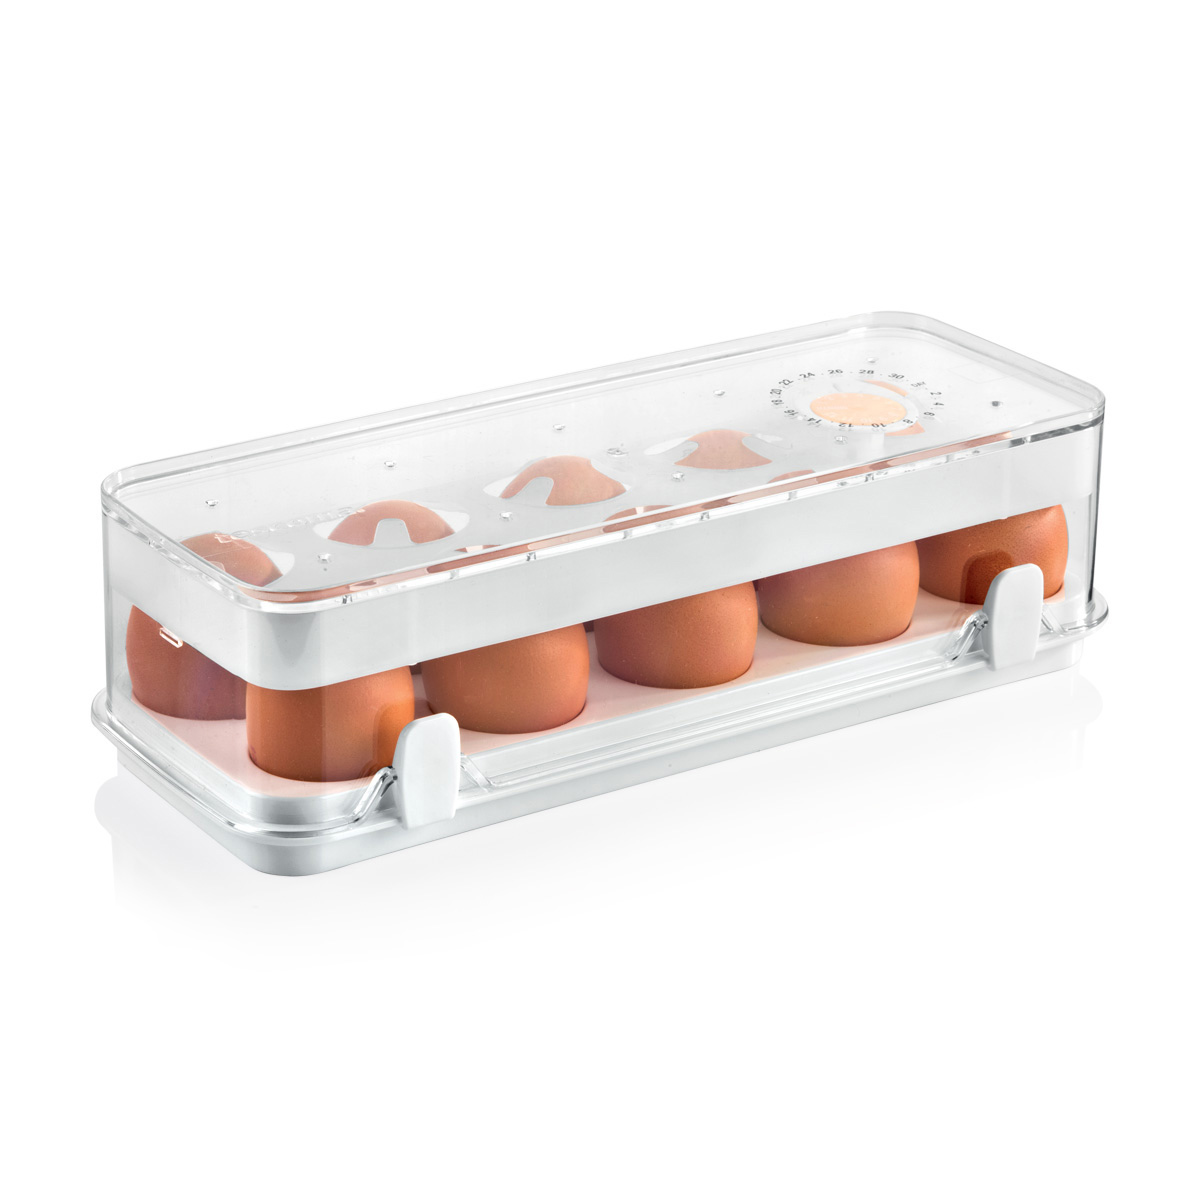 Zdrowy pojemnik do lodówki PURITY, 10 jajek